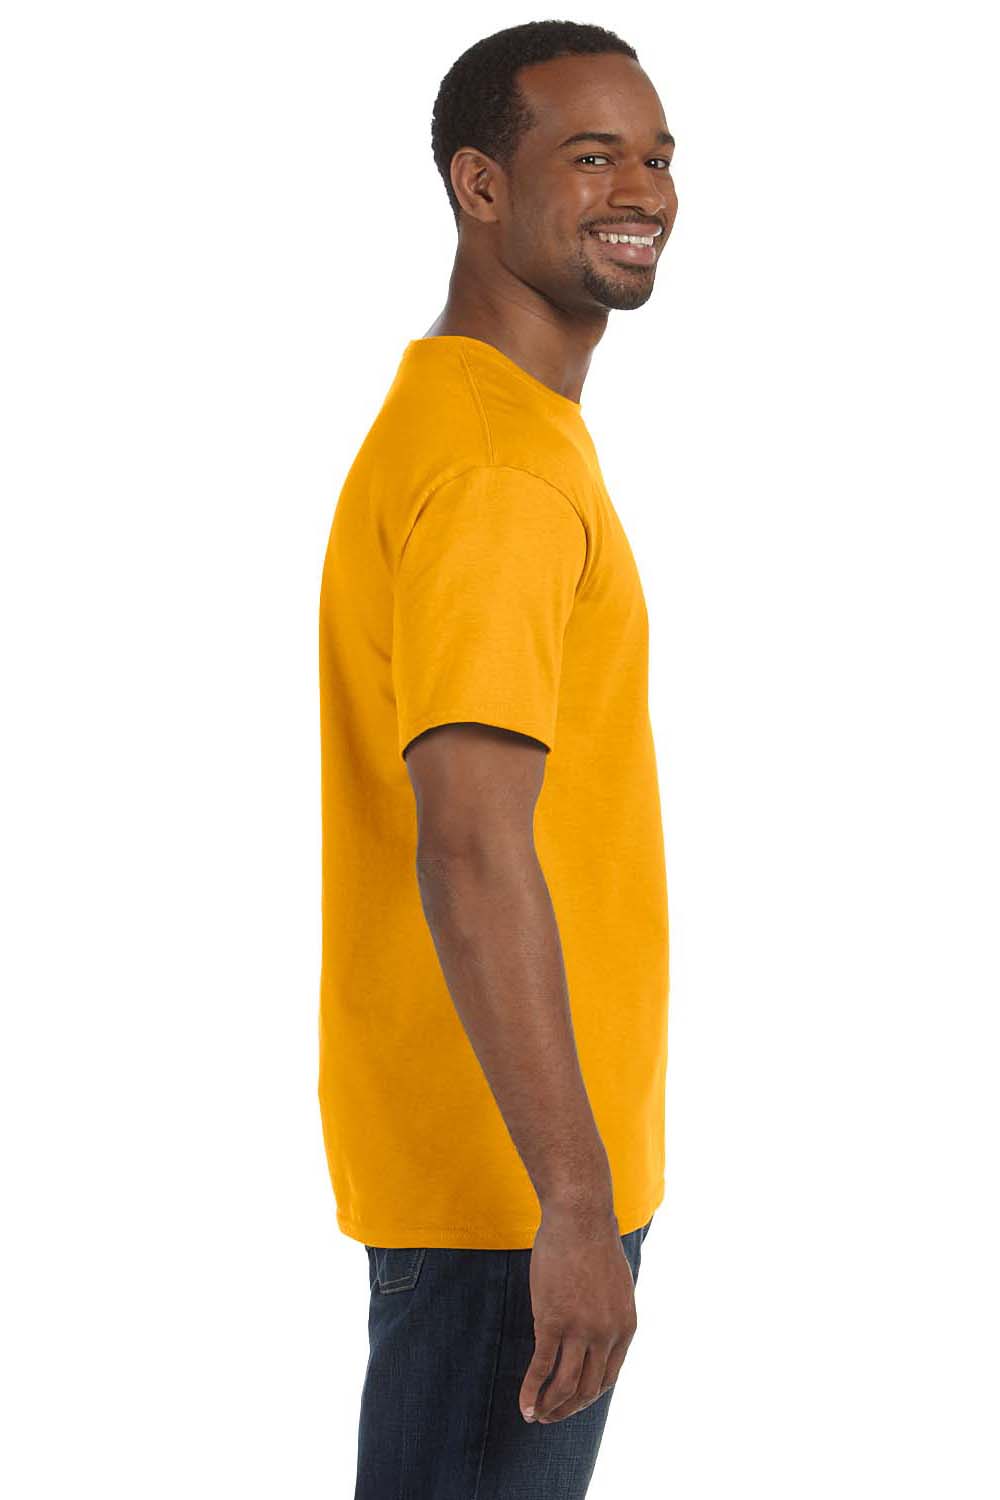 Jerzees 29M Mens Dri-Power Moisture Wicking Short Sleeve Crewneck T-Shirt Gold Side